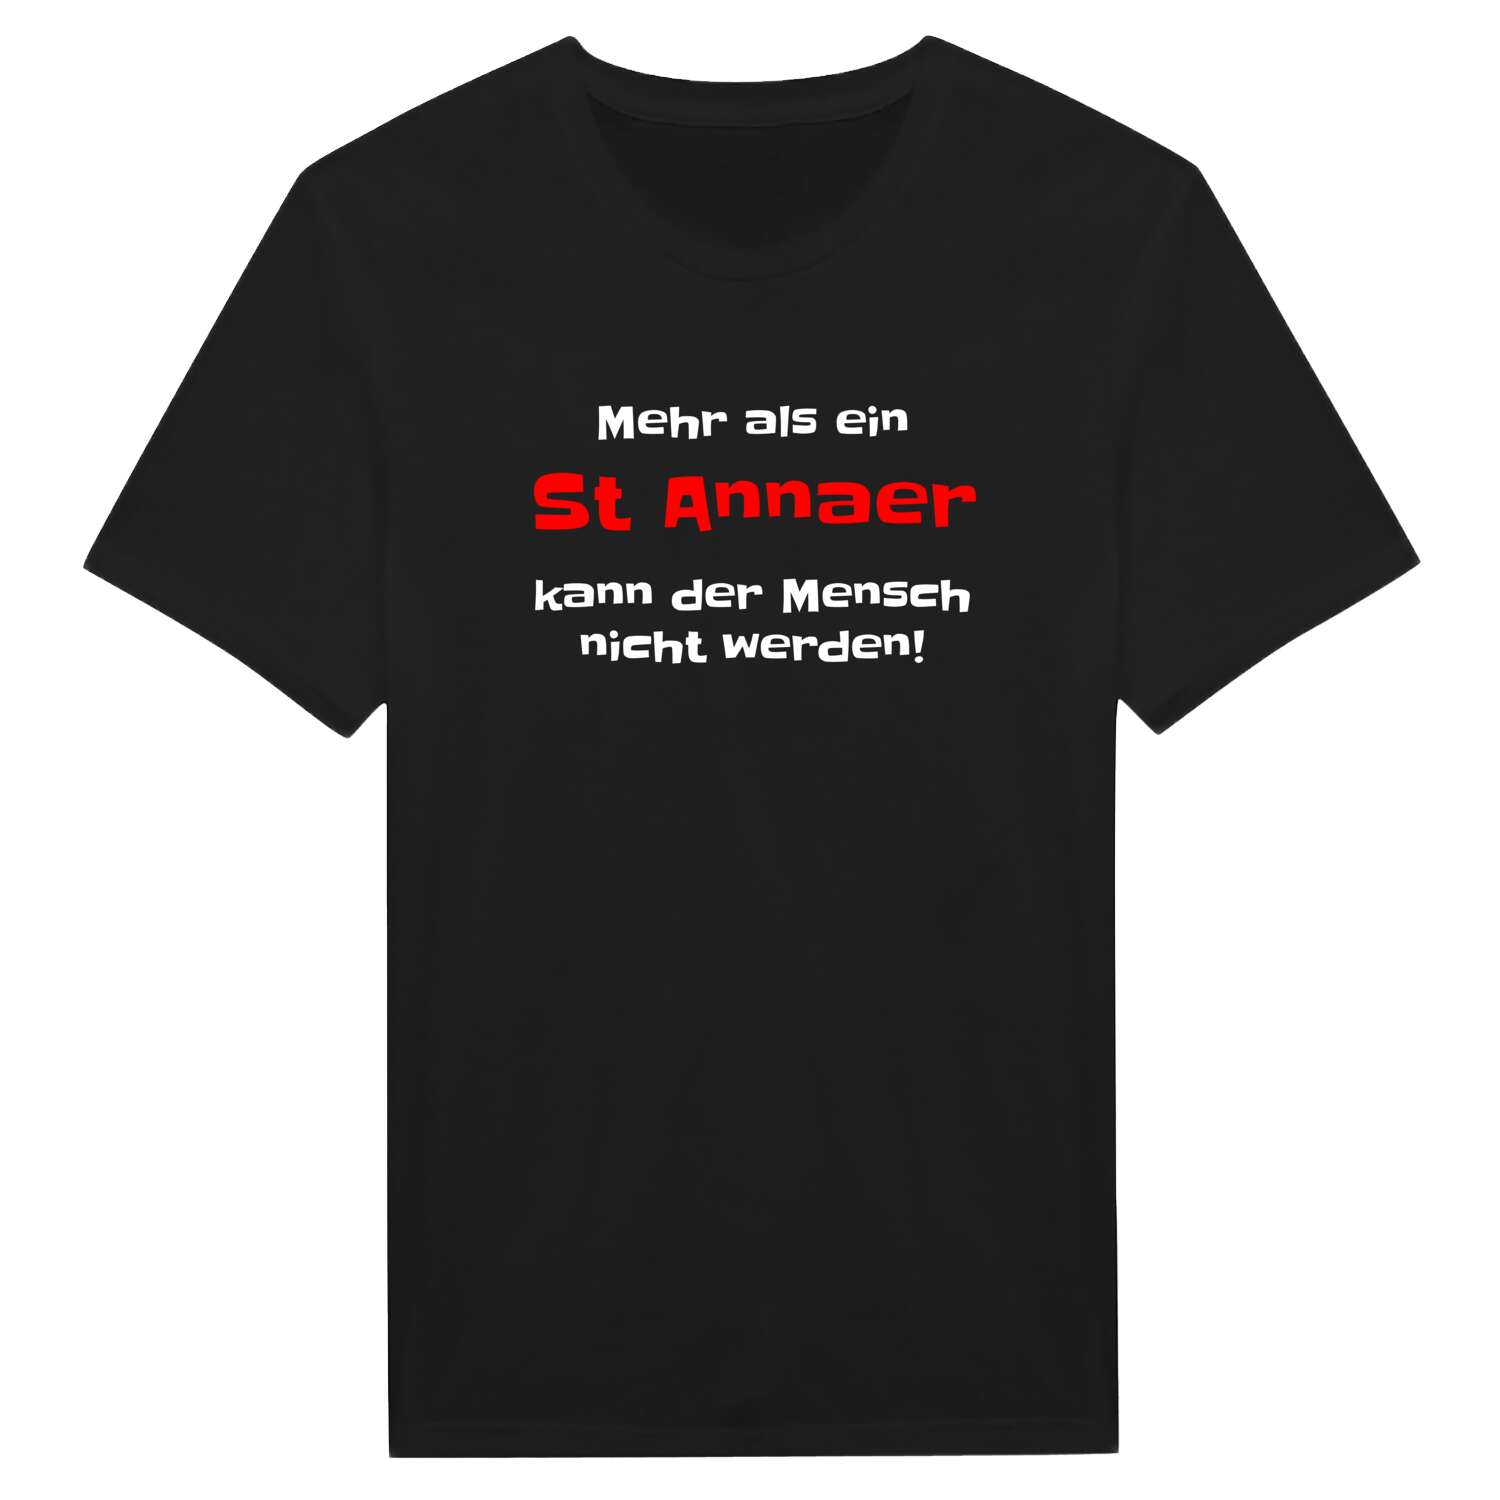 St Anna T-Shirt »Mehr als ein«